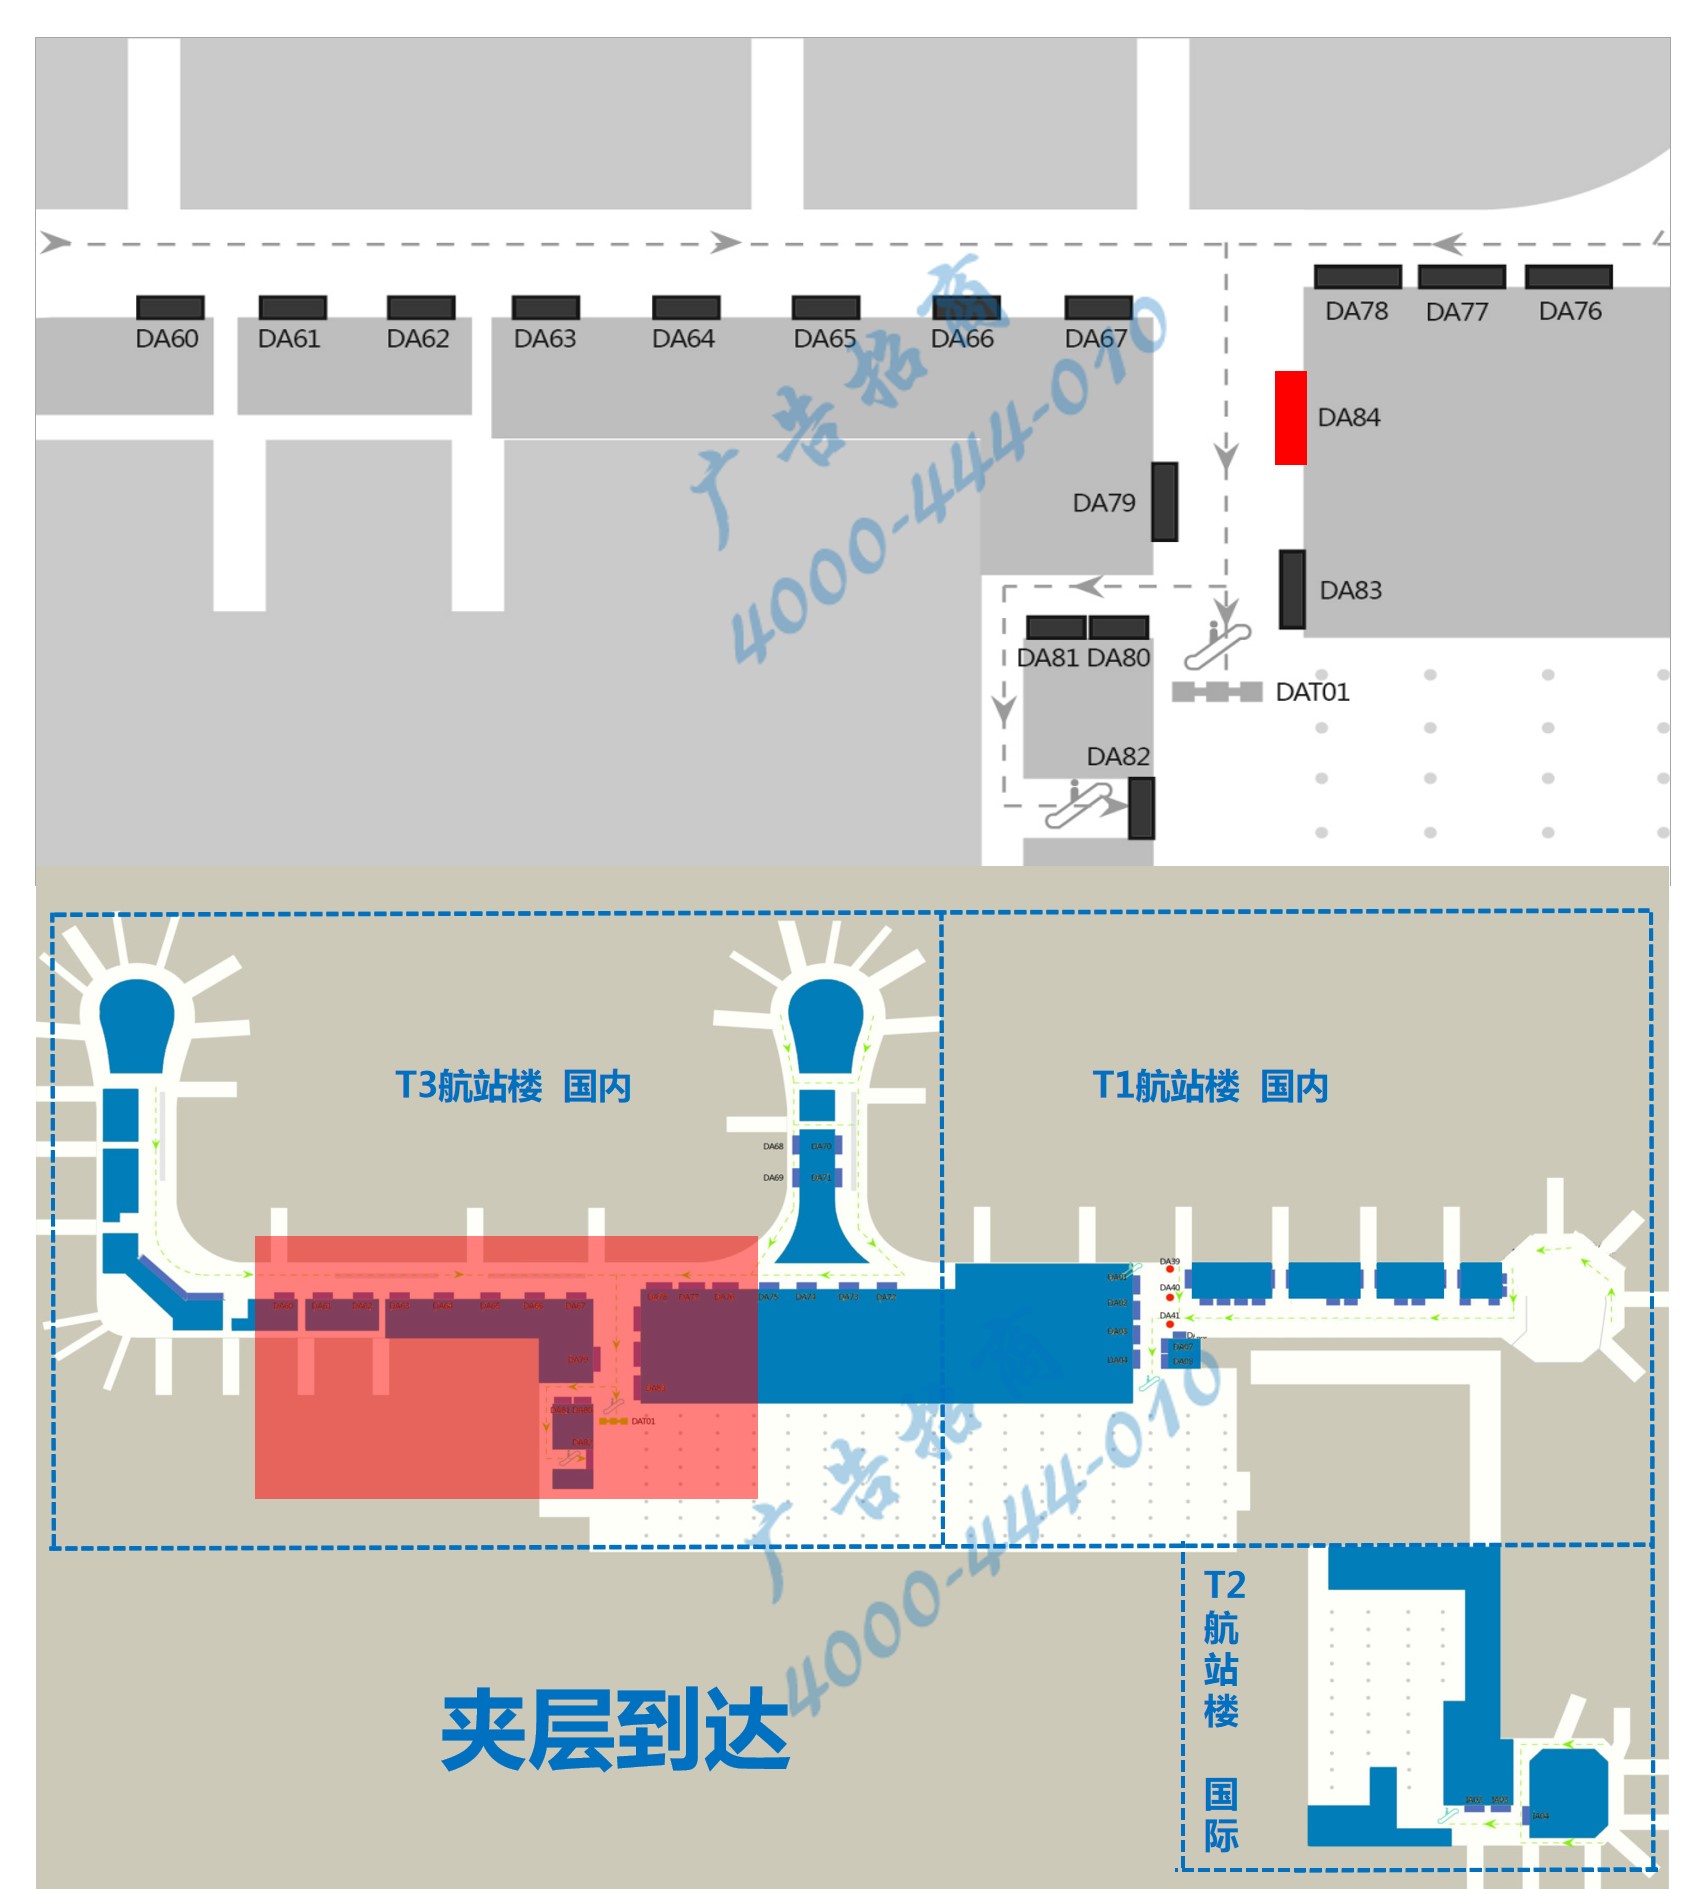 杭州机场广告-T3国内到达夹层汇集口墙体灯箱DA84点位图